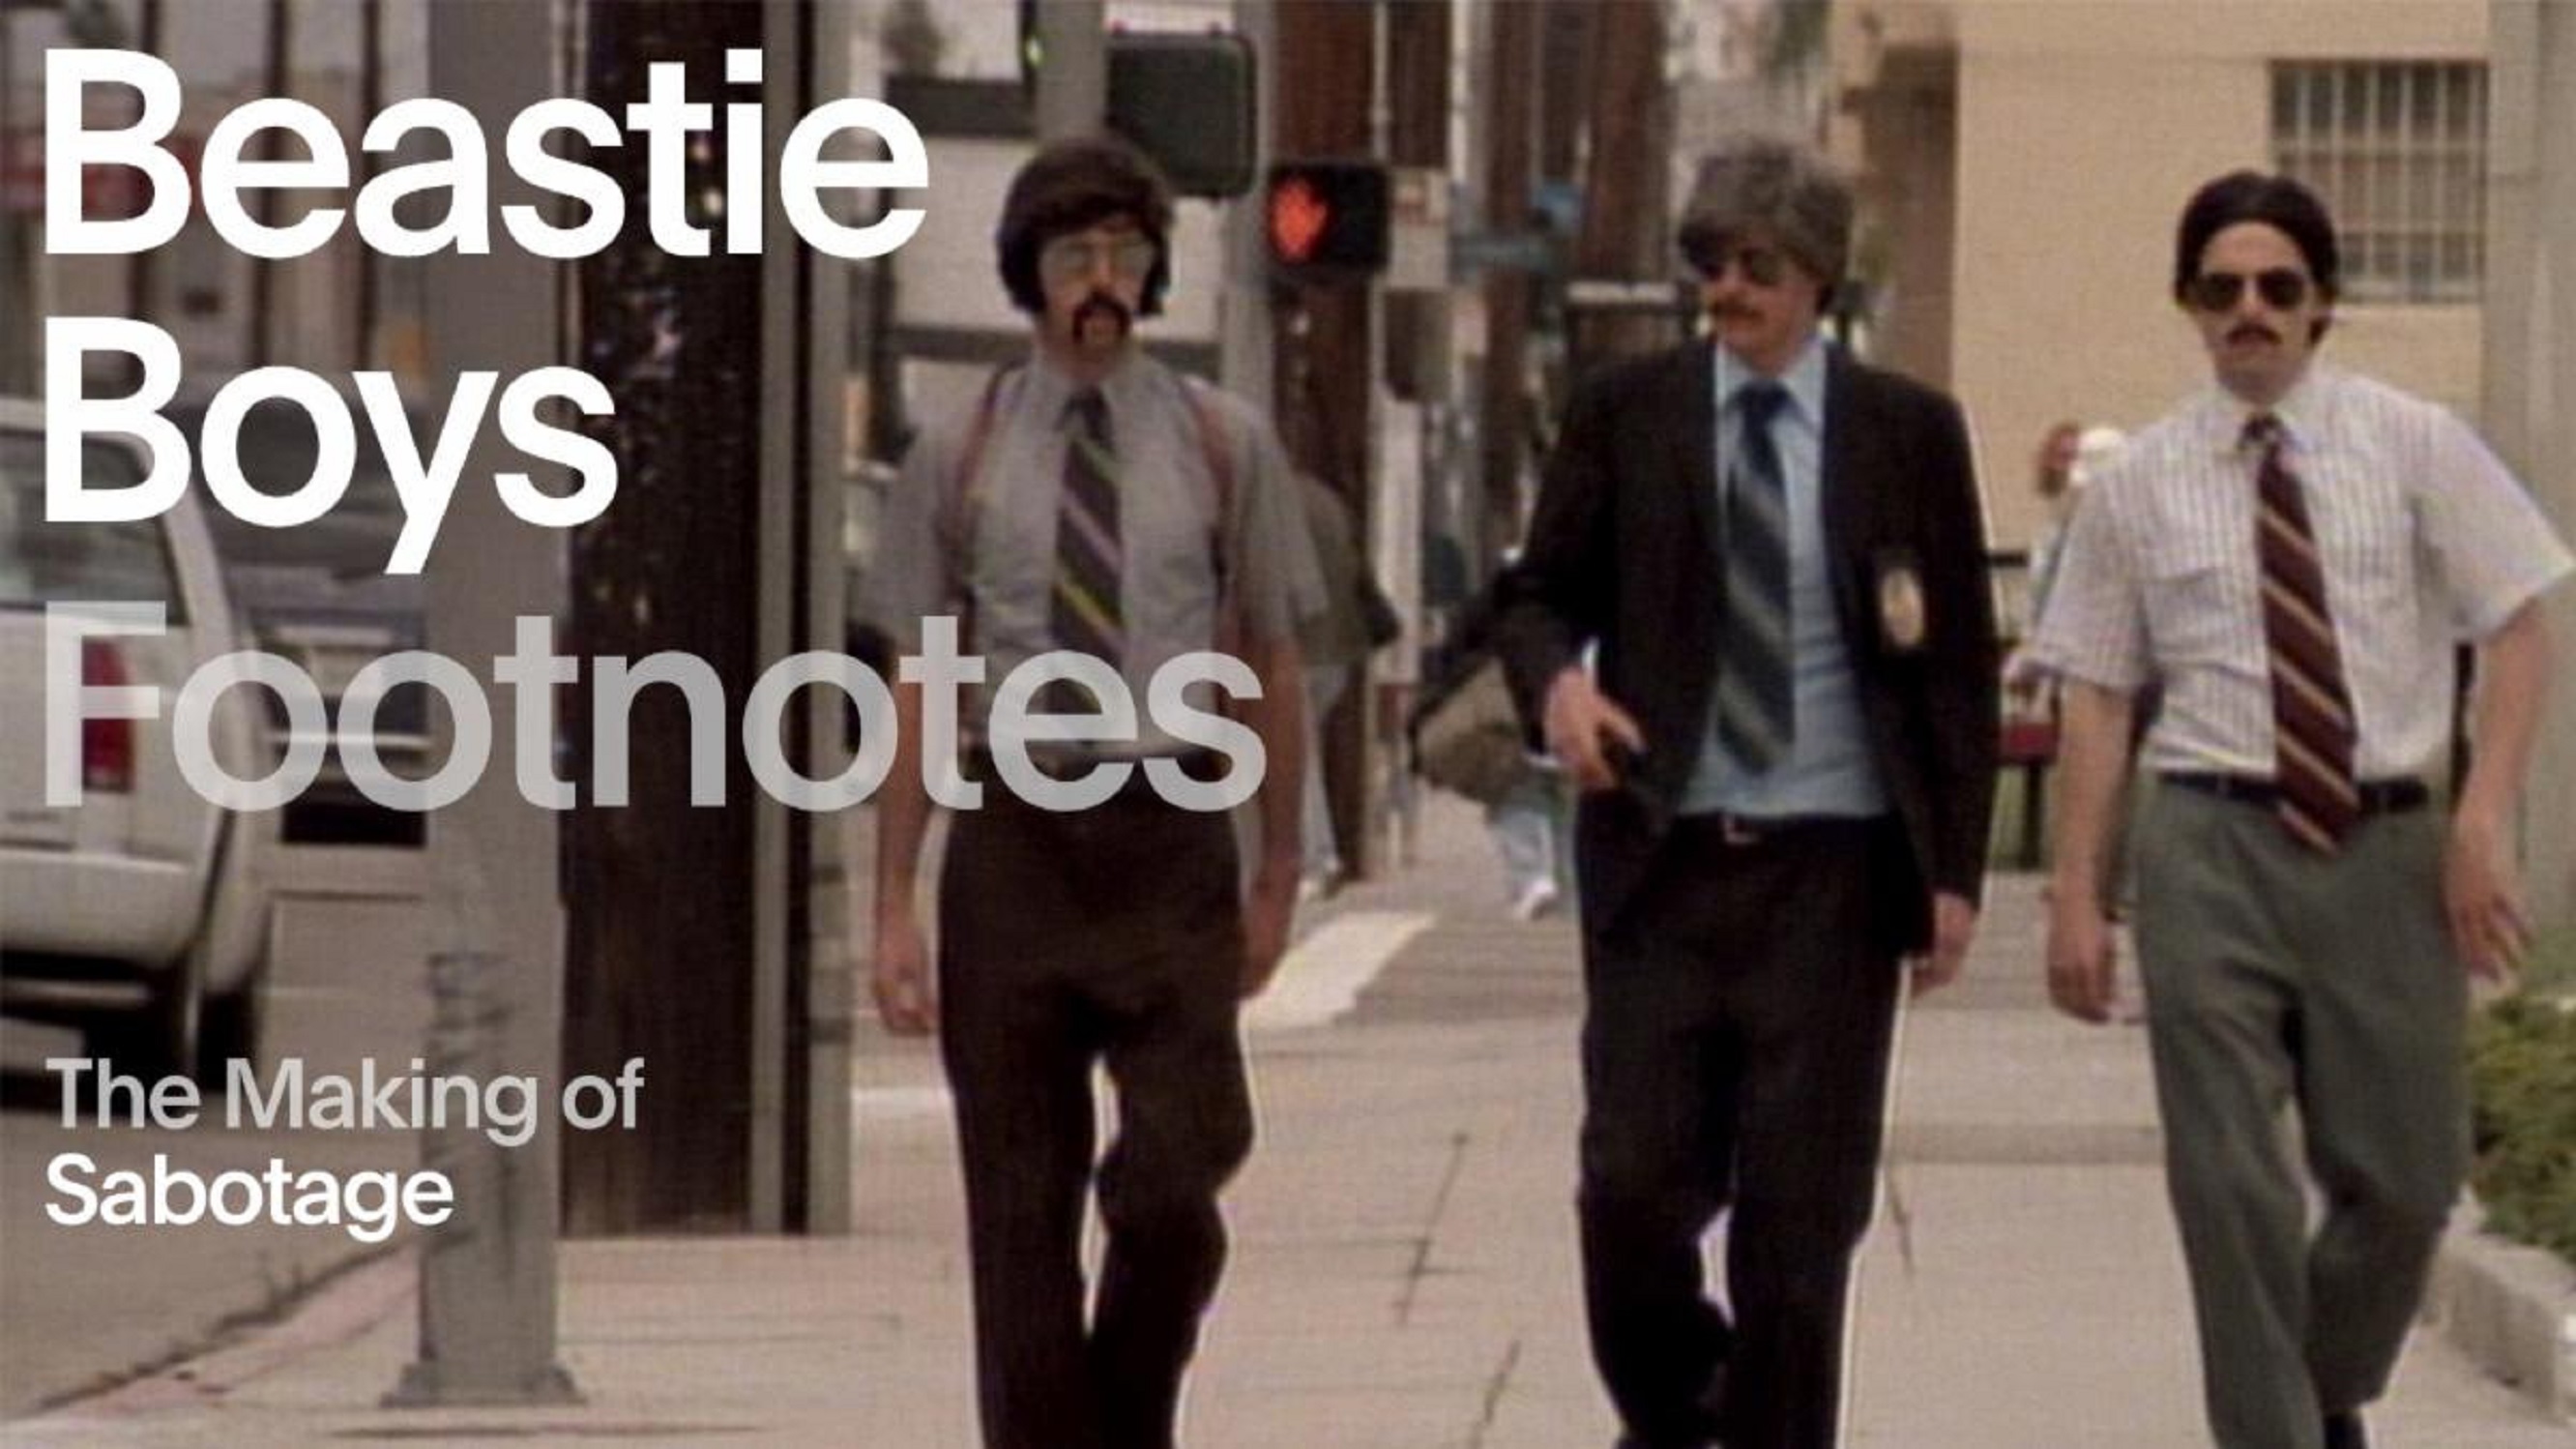 Beastie Boys behind-the-scenes of "Sabotage”